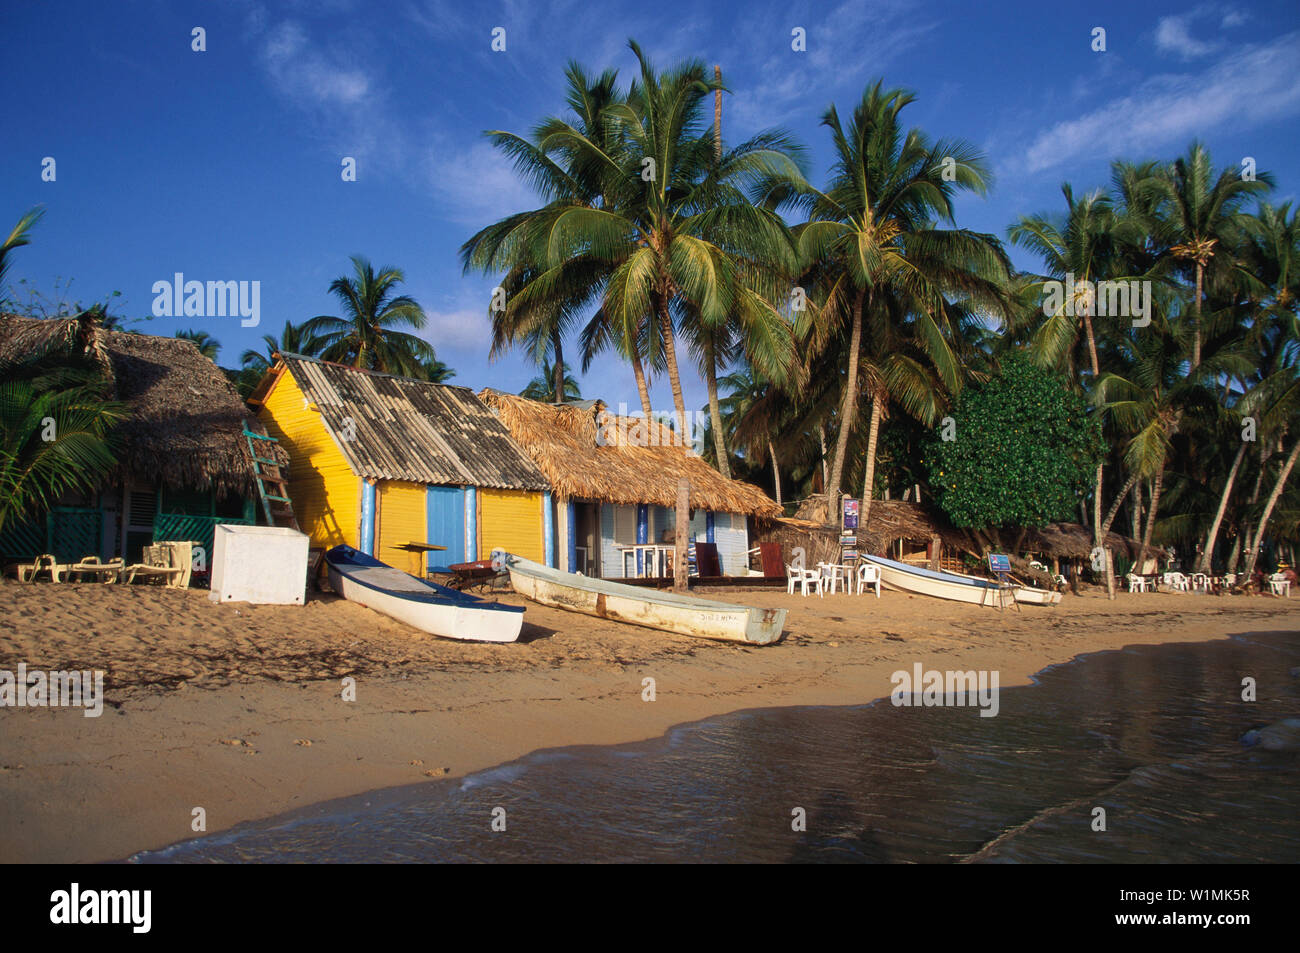 Pueblo de los Pescadores, Las Terrenas, Dominikanische Republik Karibik Stock Photo